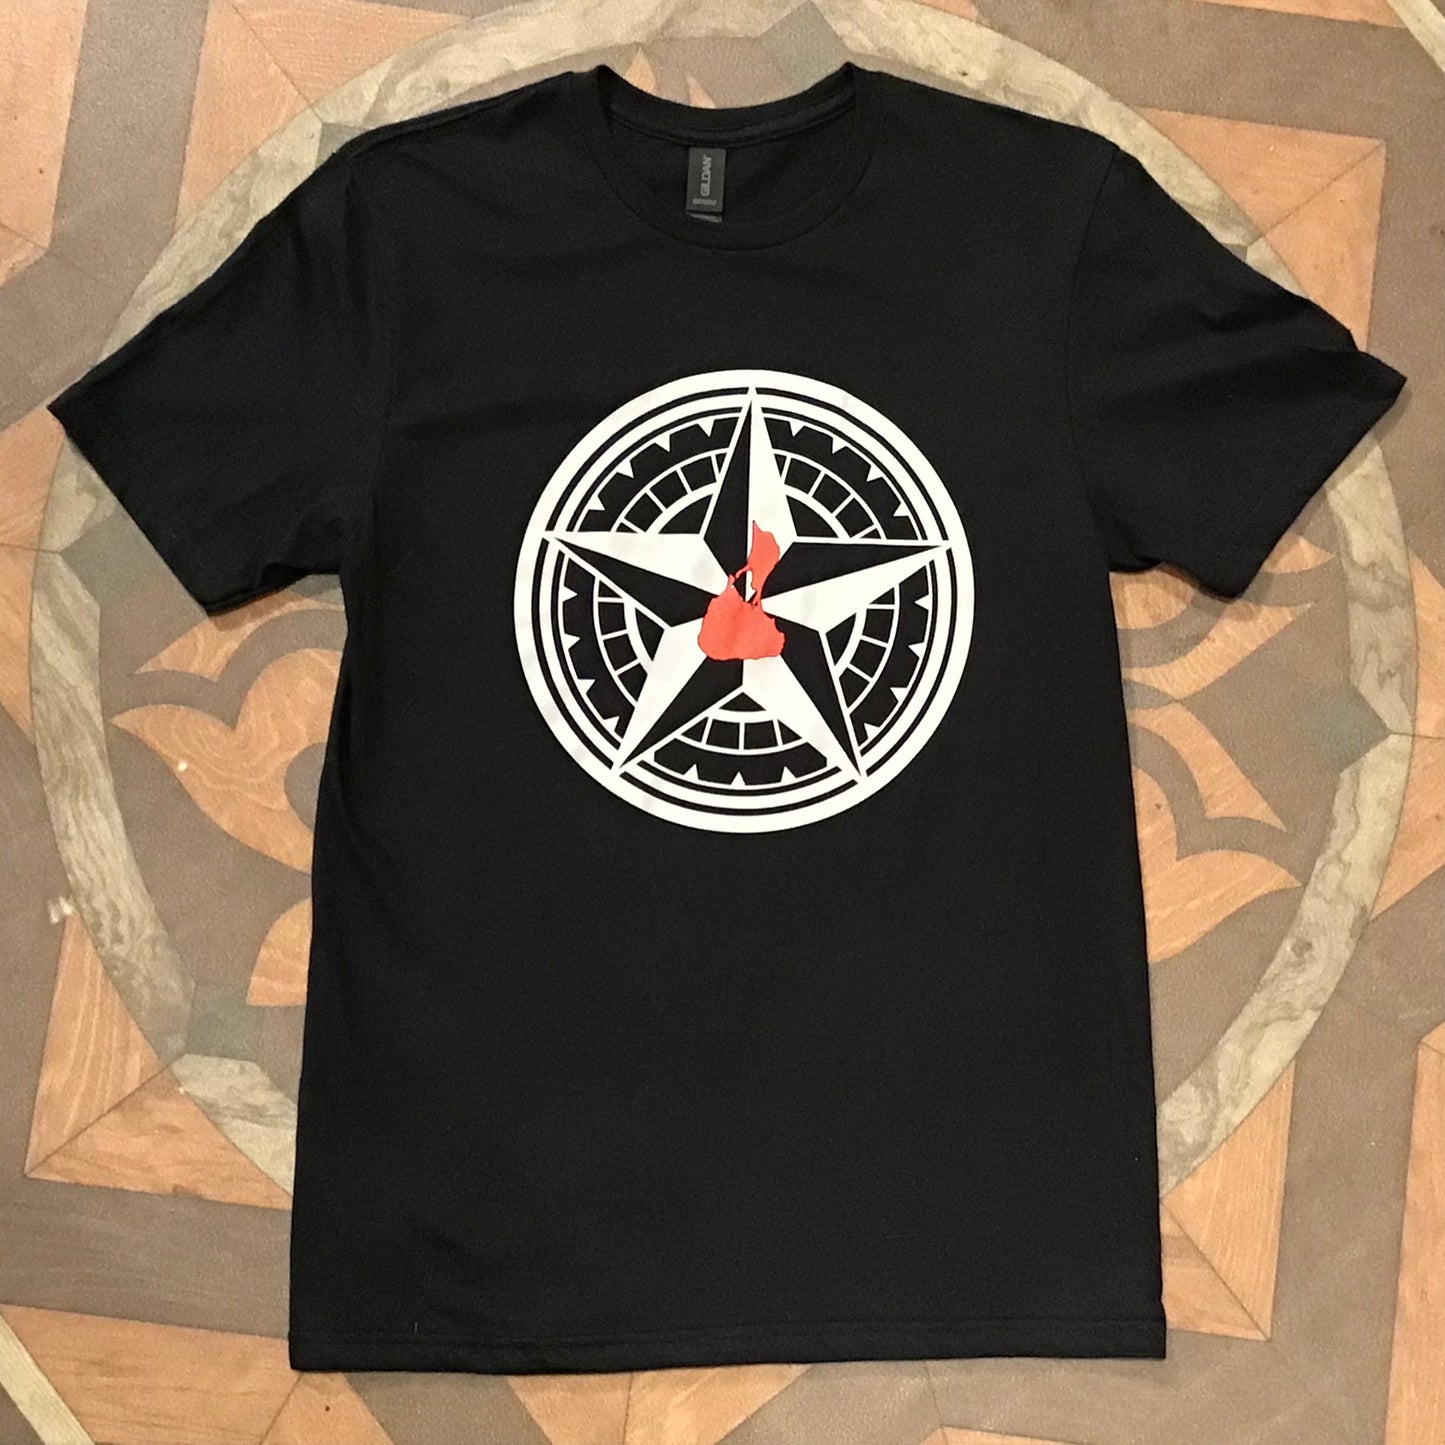 Next Gen Men’s style Blockstar T-shirt